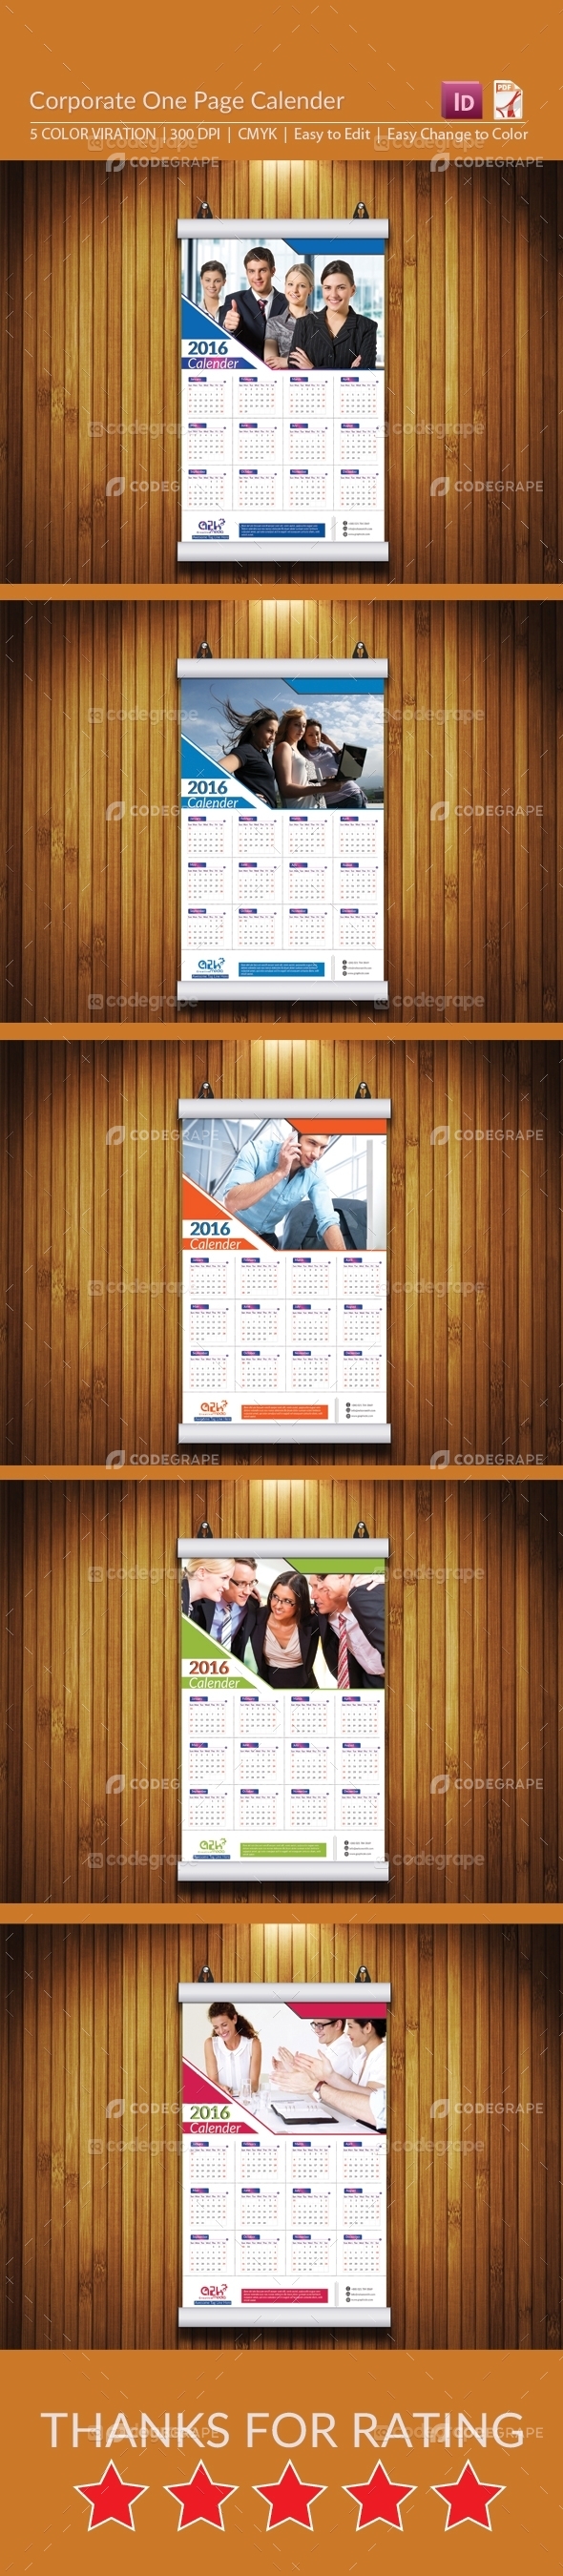 Corporate One Page Calendar Design